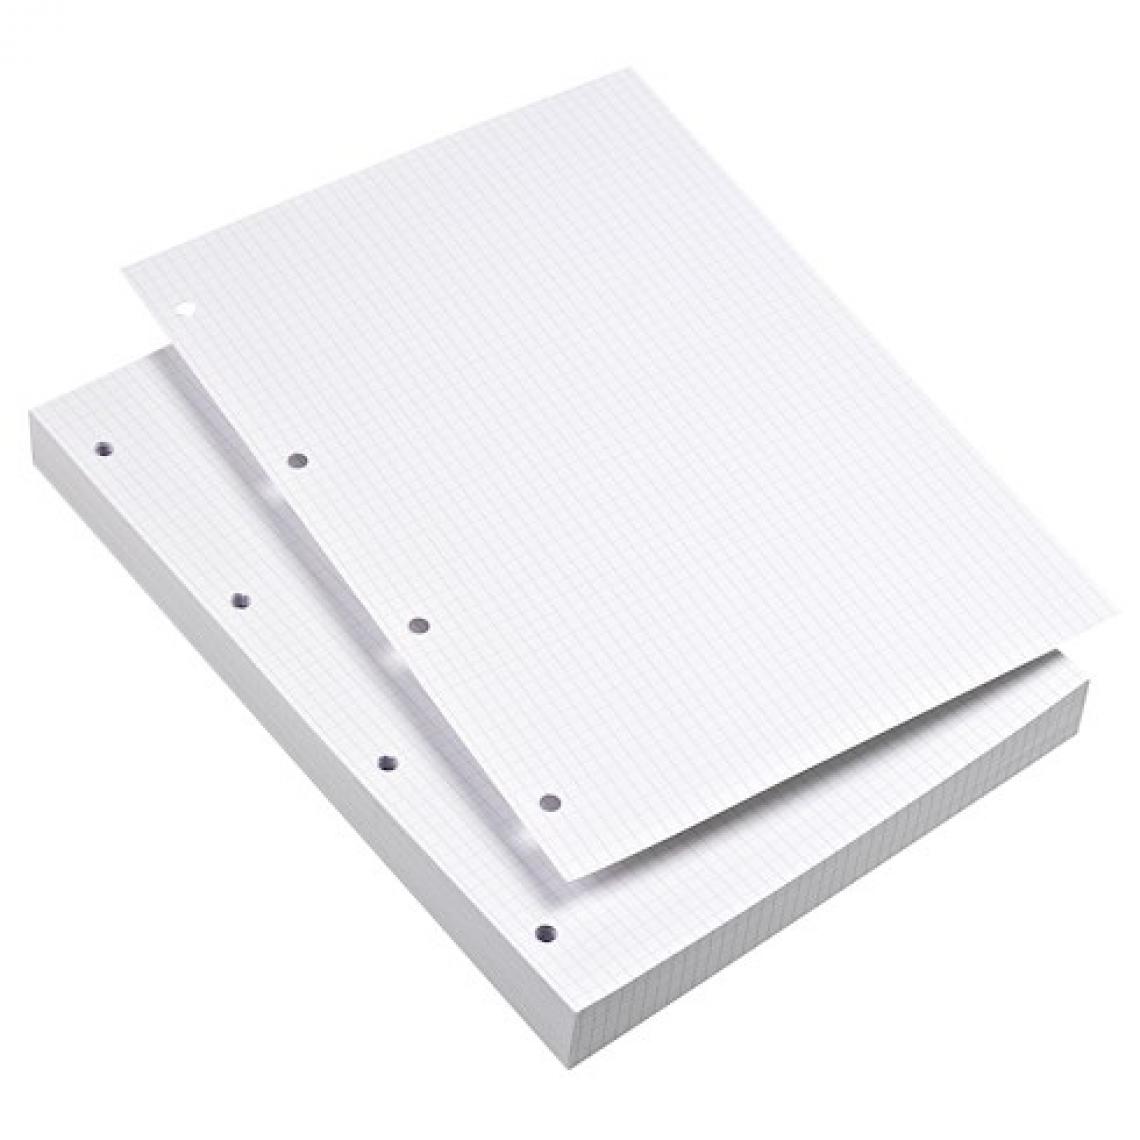 Oxford - Fiche bristol 210 x 297 mm blanc quadrillé 5 x 5 perforé 9 trous - Boîte de 100 - Accessoires Bureau